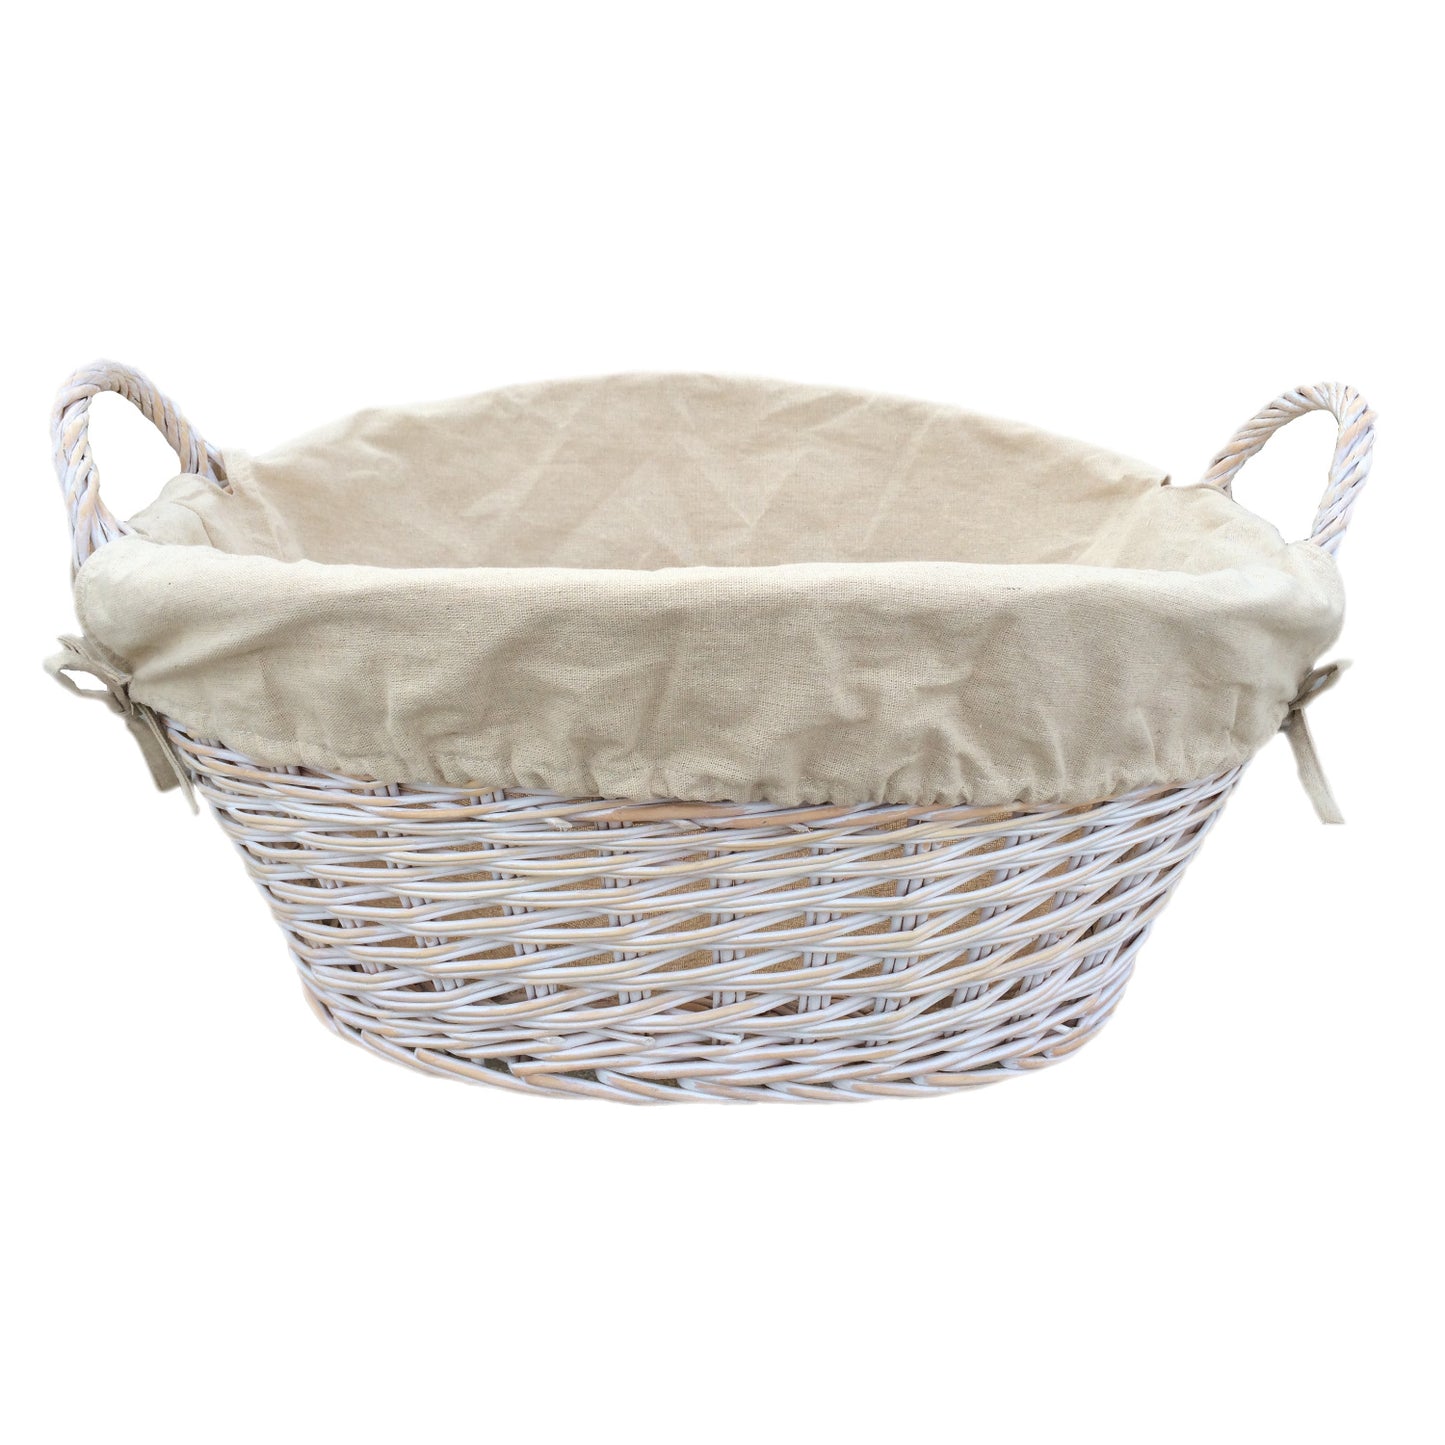 White Finish Wash Basket With White Lining